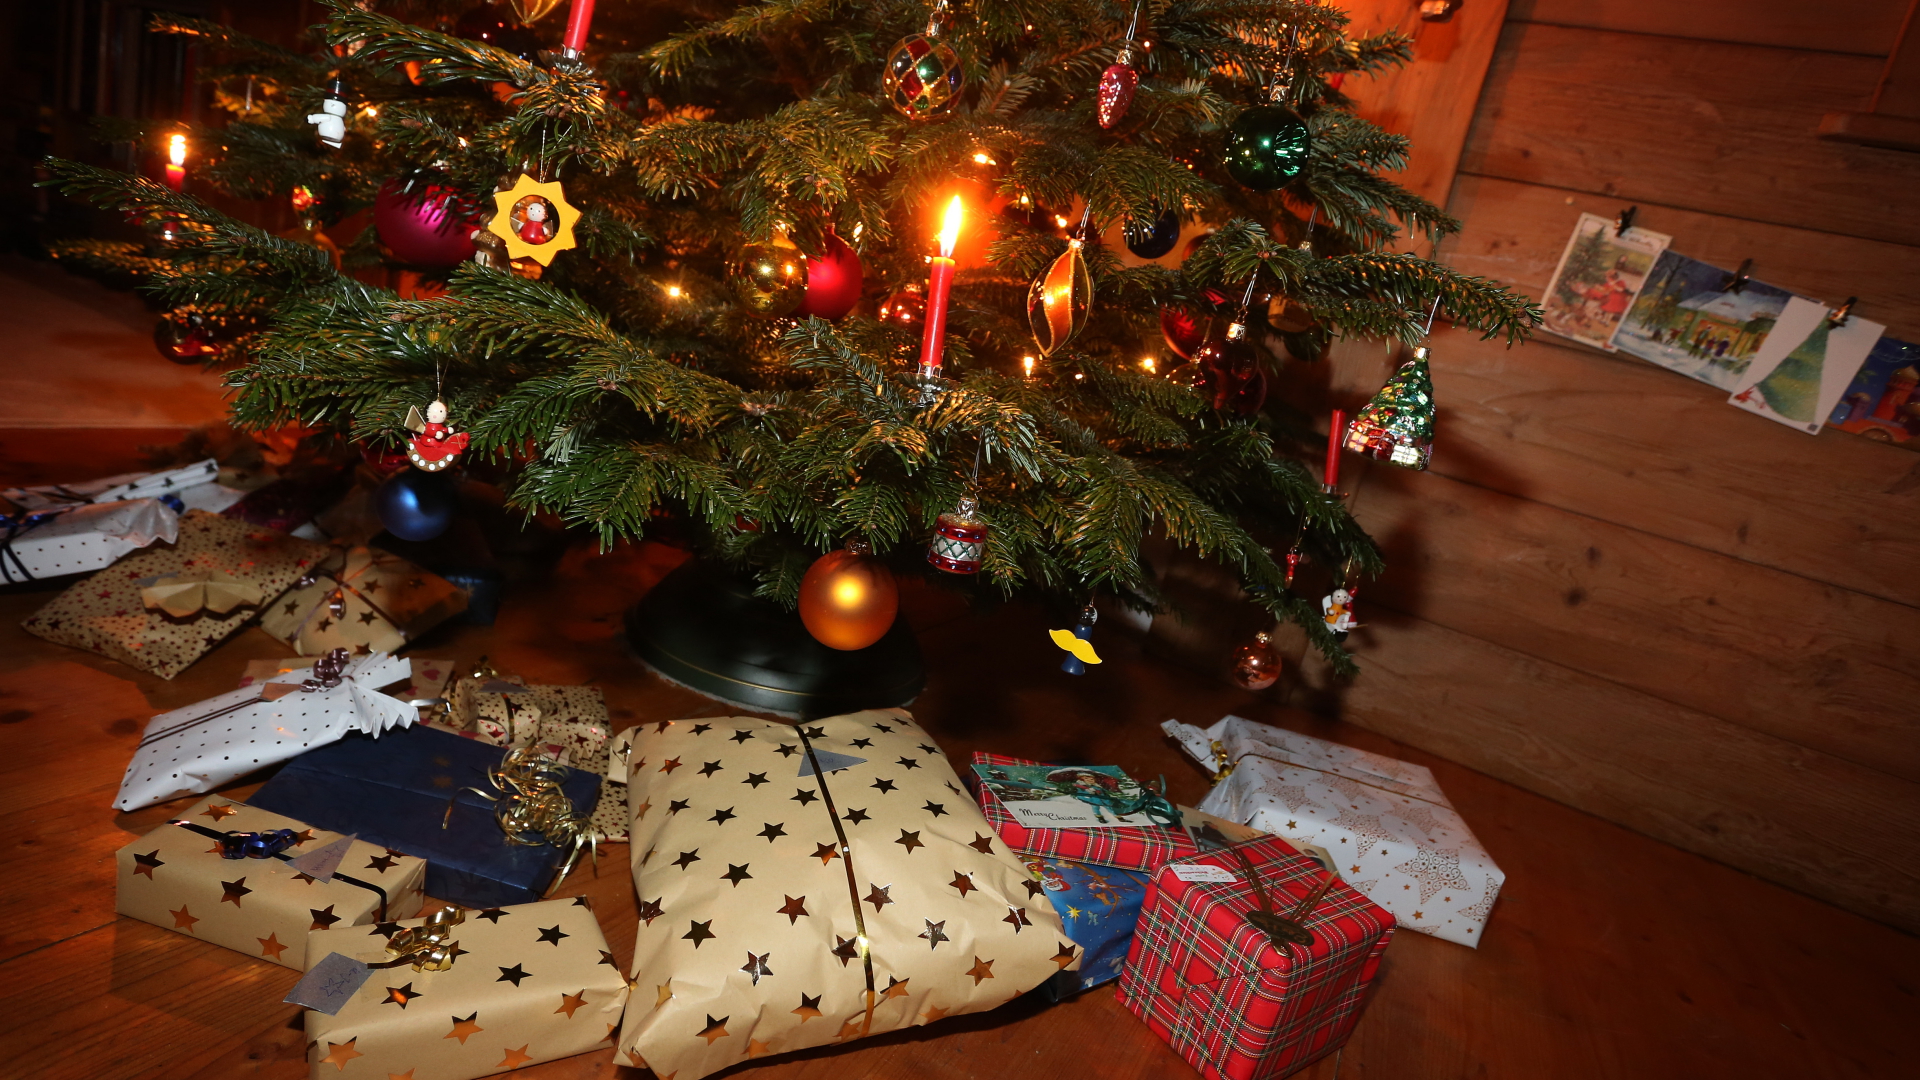 Pakete liegen unter einem geschmückten Weihnachtsbaum | dpa